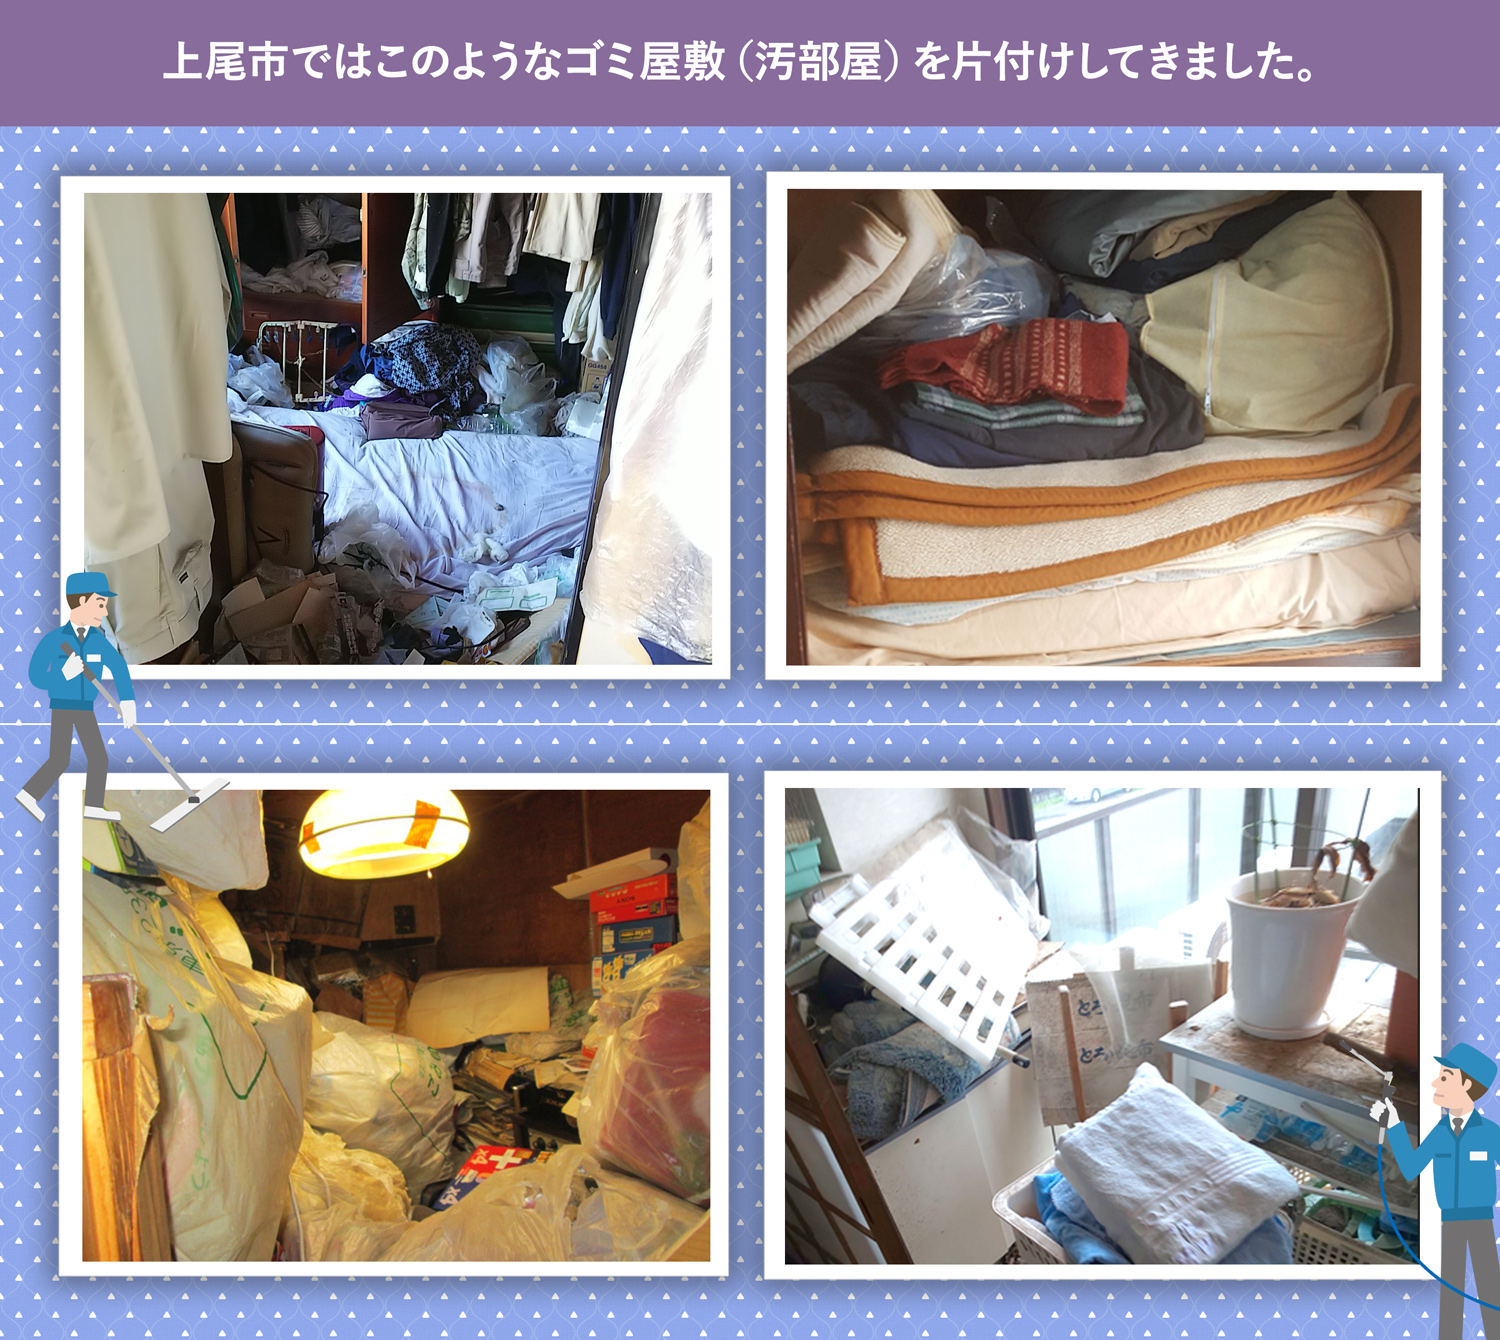 上尾市で行ったで行ったごみ屋敷・汚部屋の片付けの一例